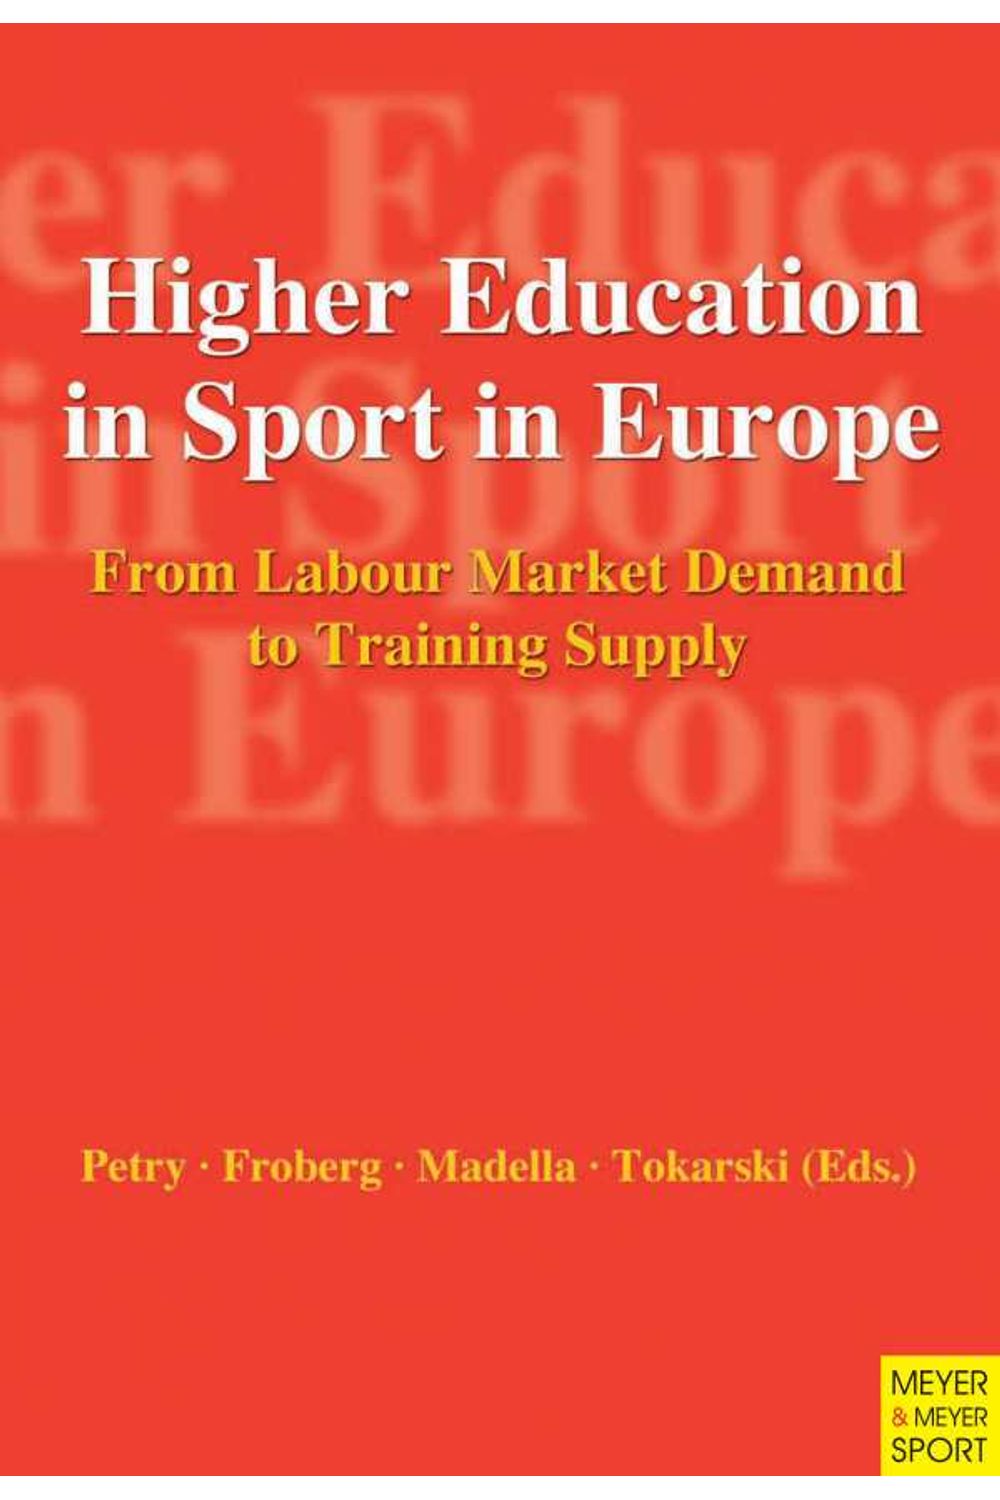 bw-higher-education-in-sport-in-europe-meyer-meyer-sport-9781841264820